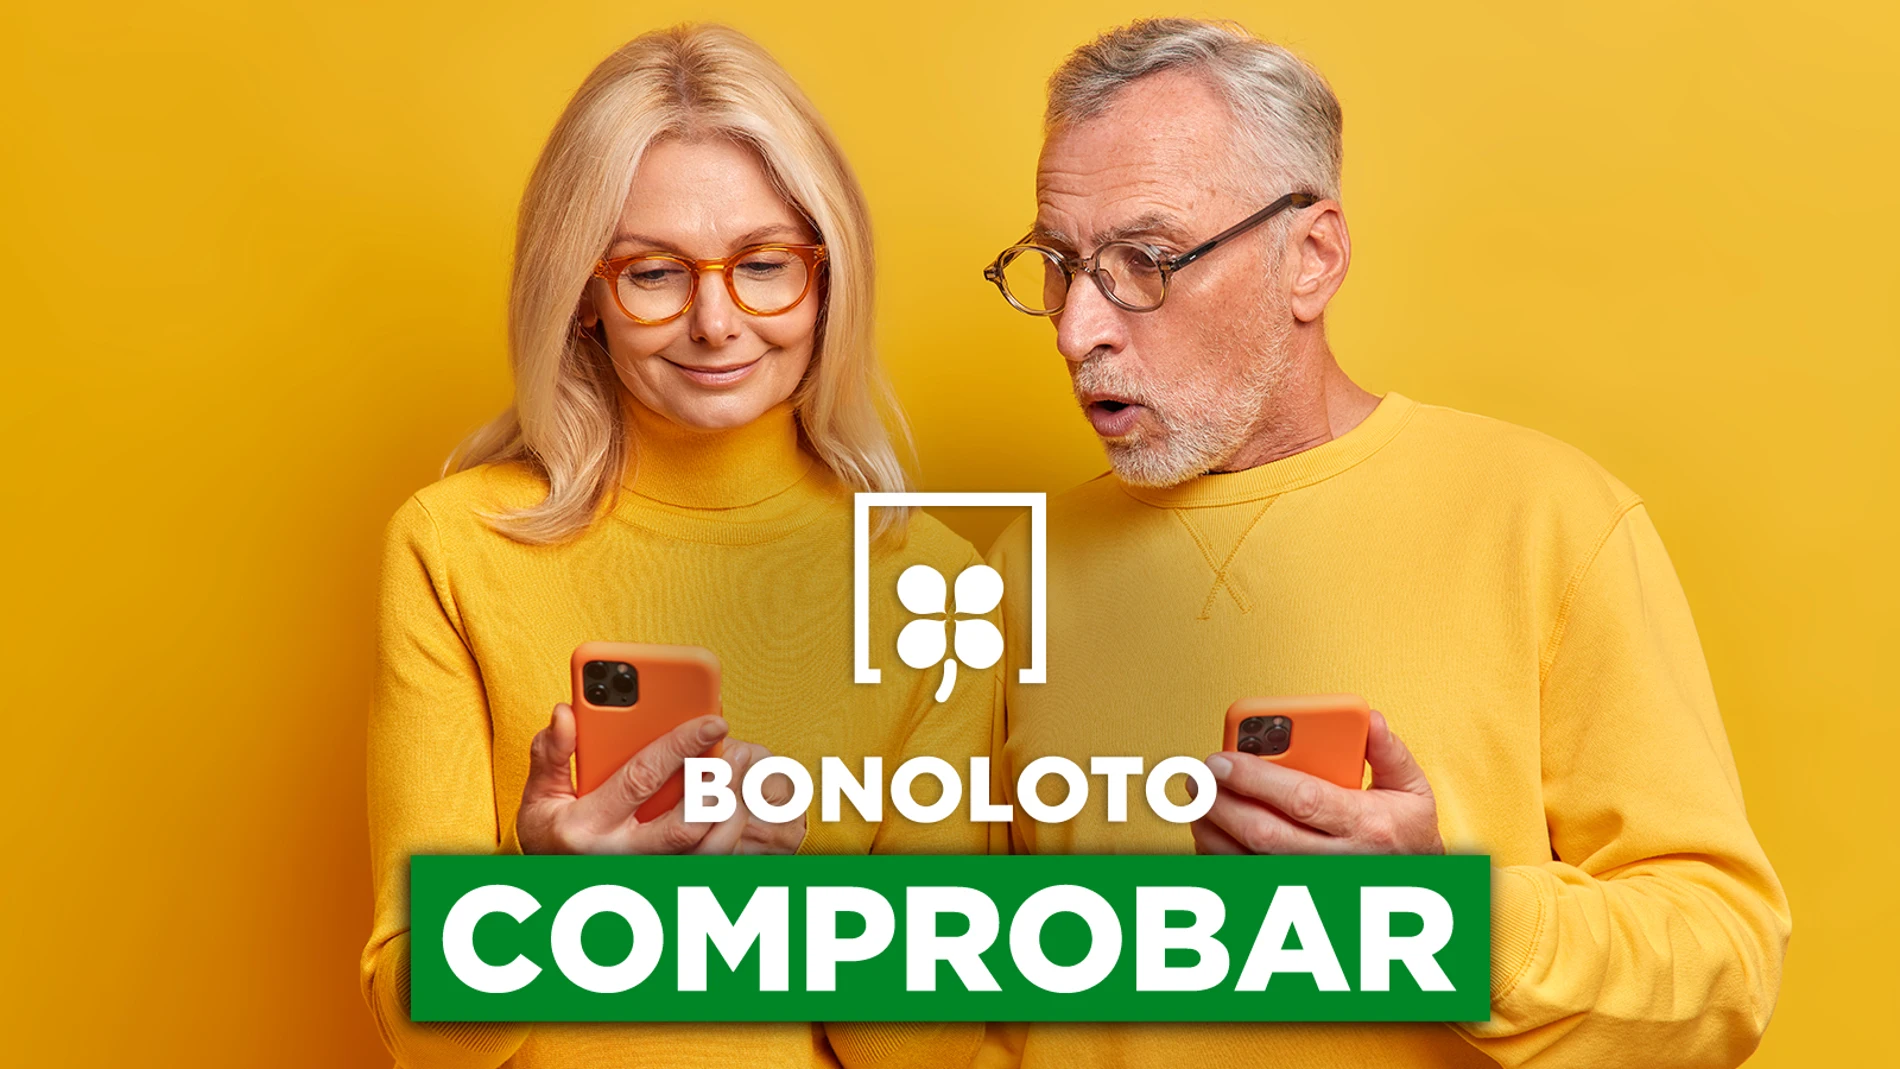 Bonoloto: comprobar hoy, viernes 3 de junio de 2022